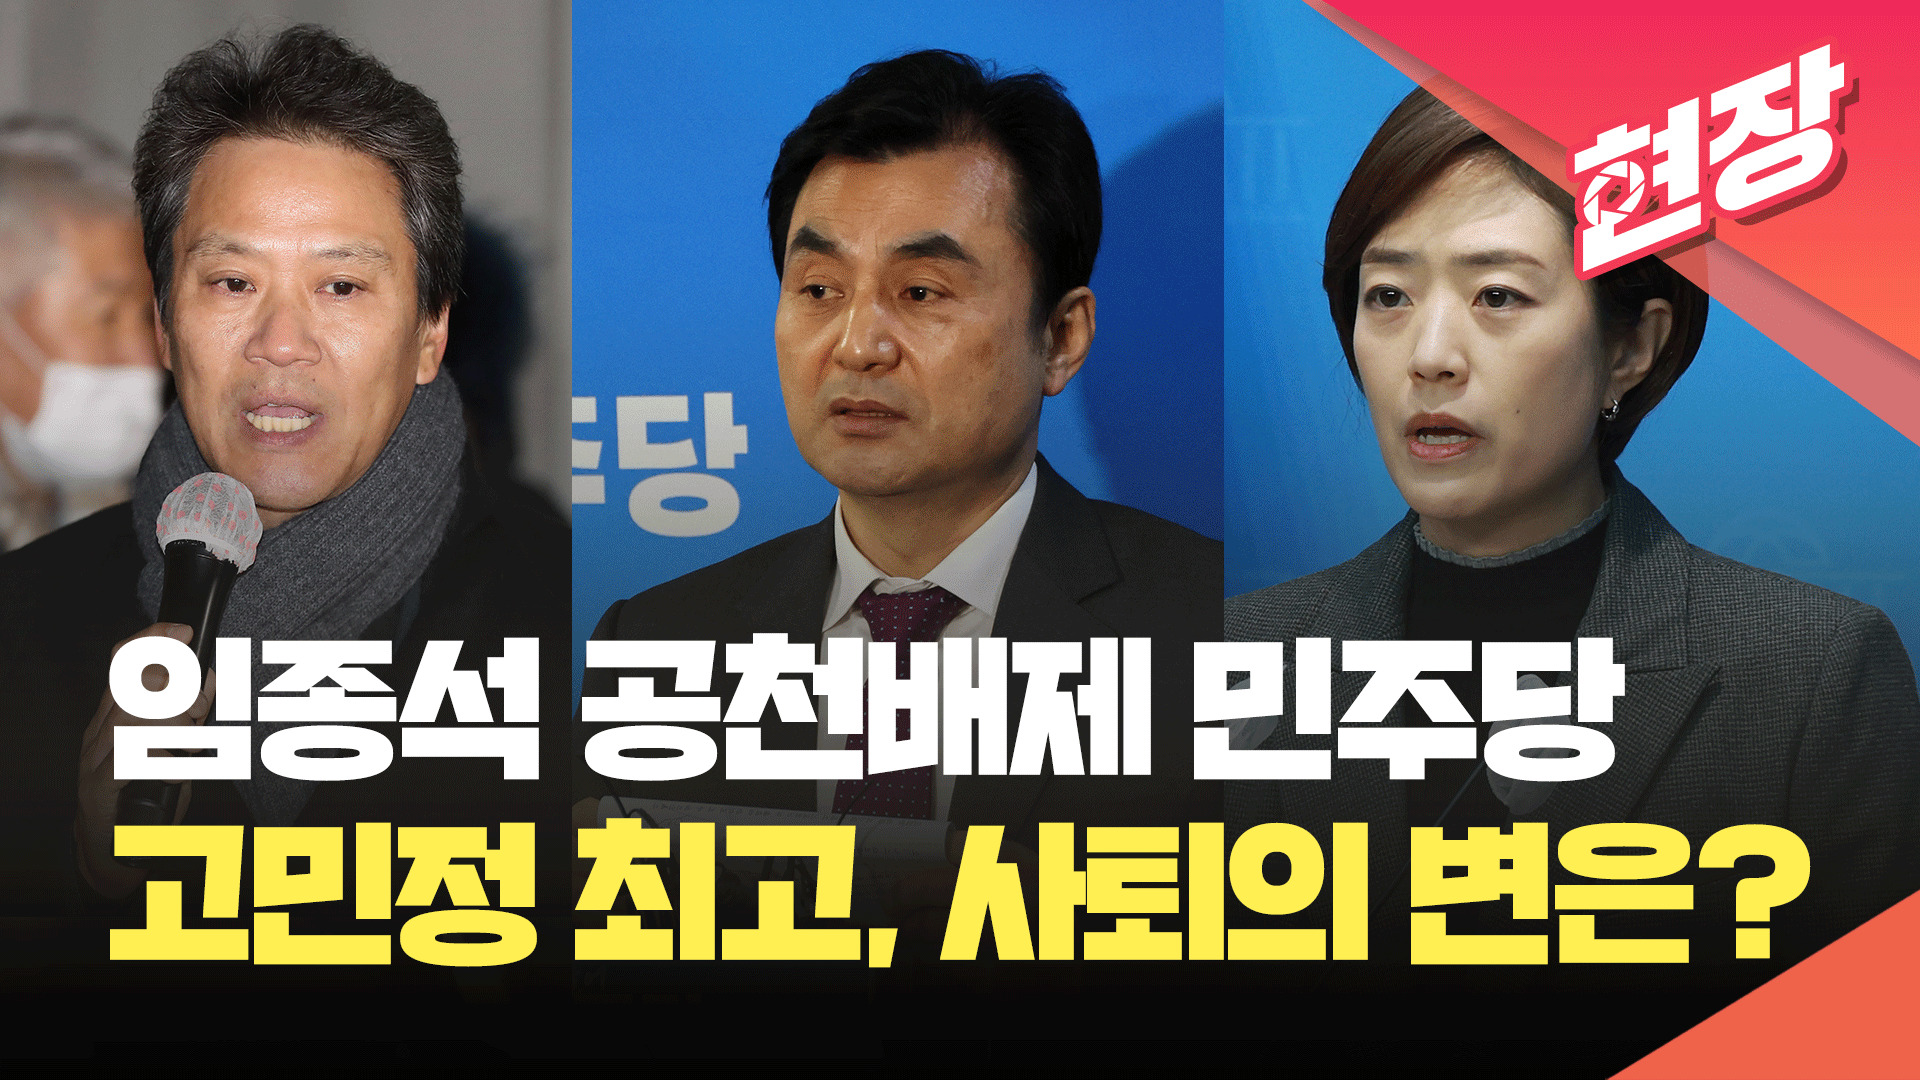 민주, 임종석 공천 배제…<br>고민정 “최고위원 사퇴” 